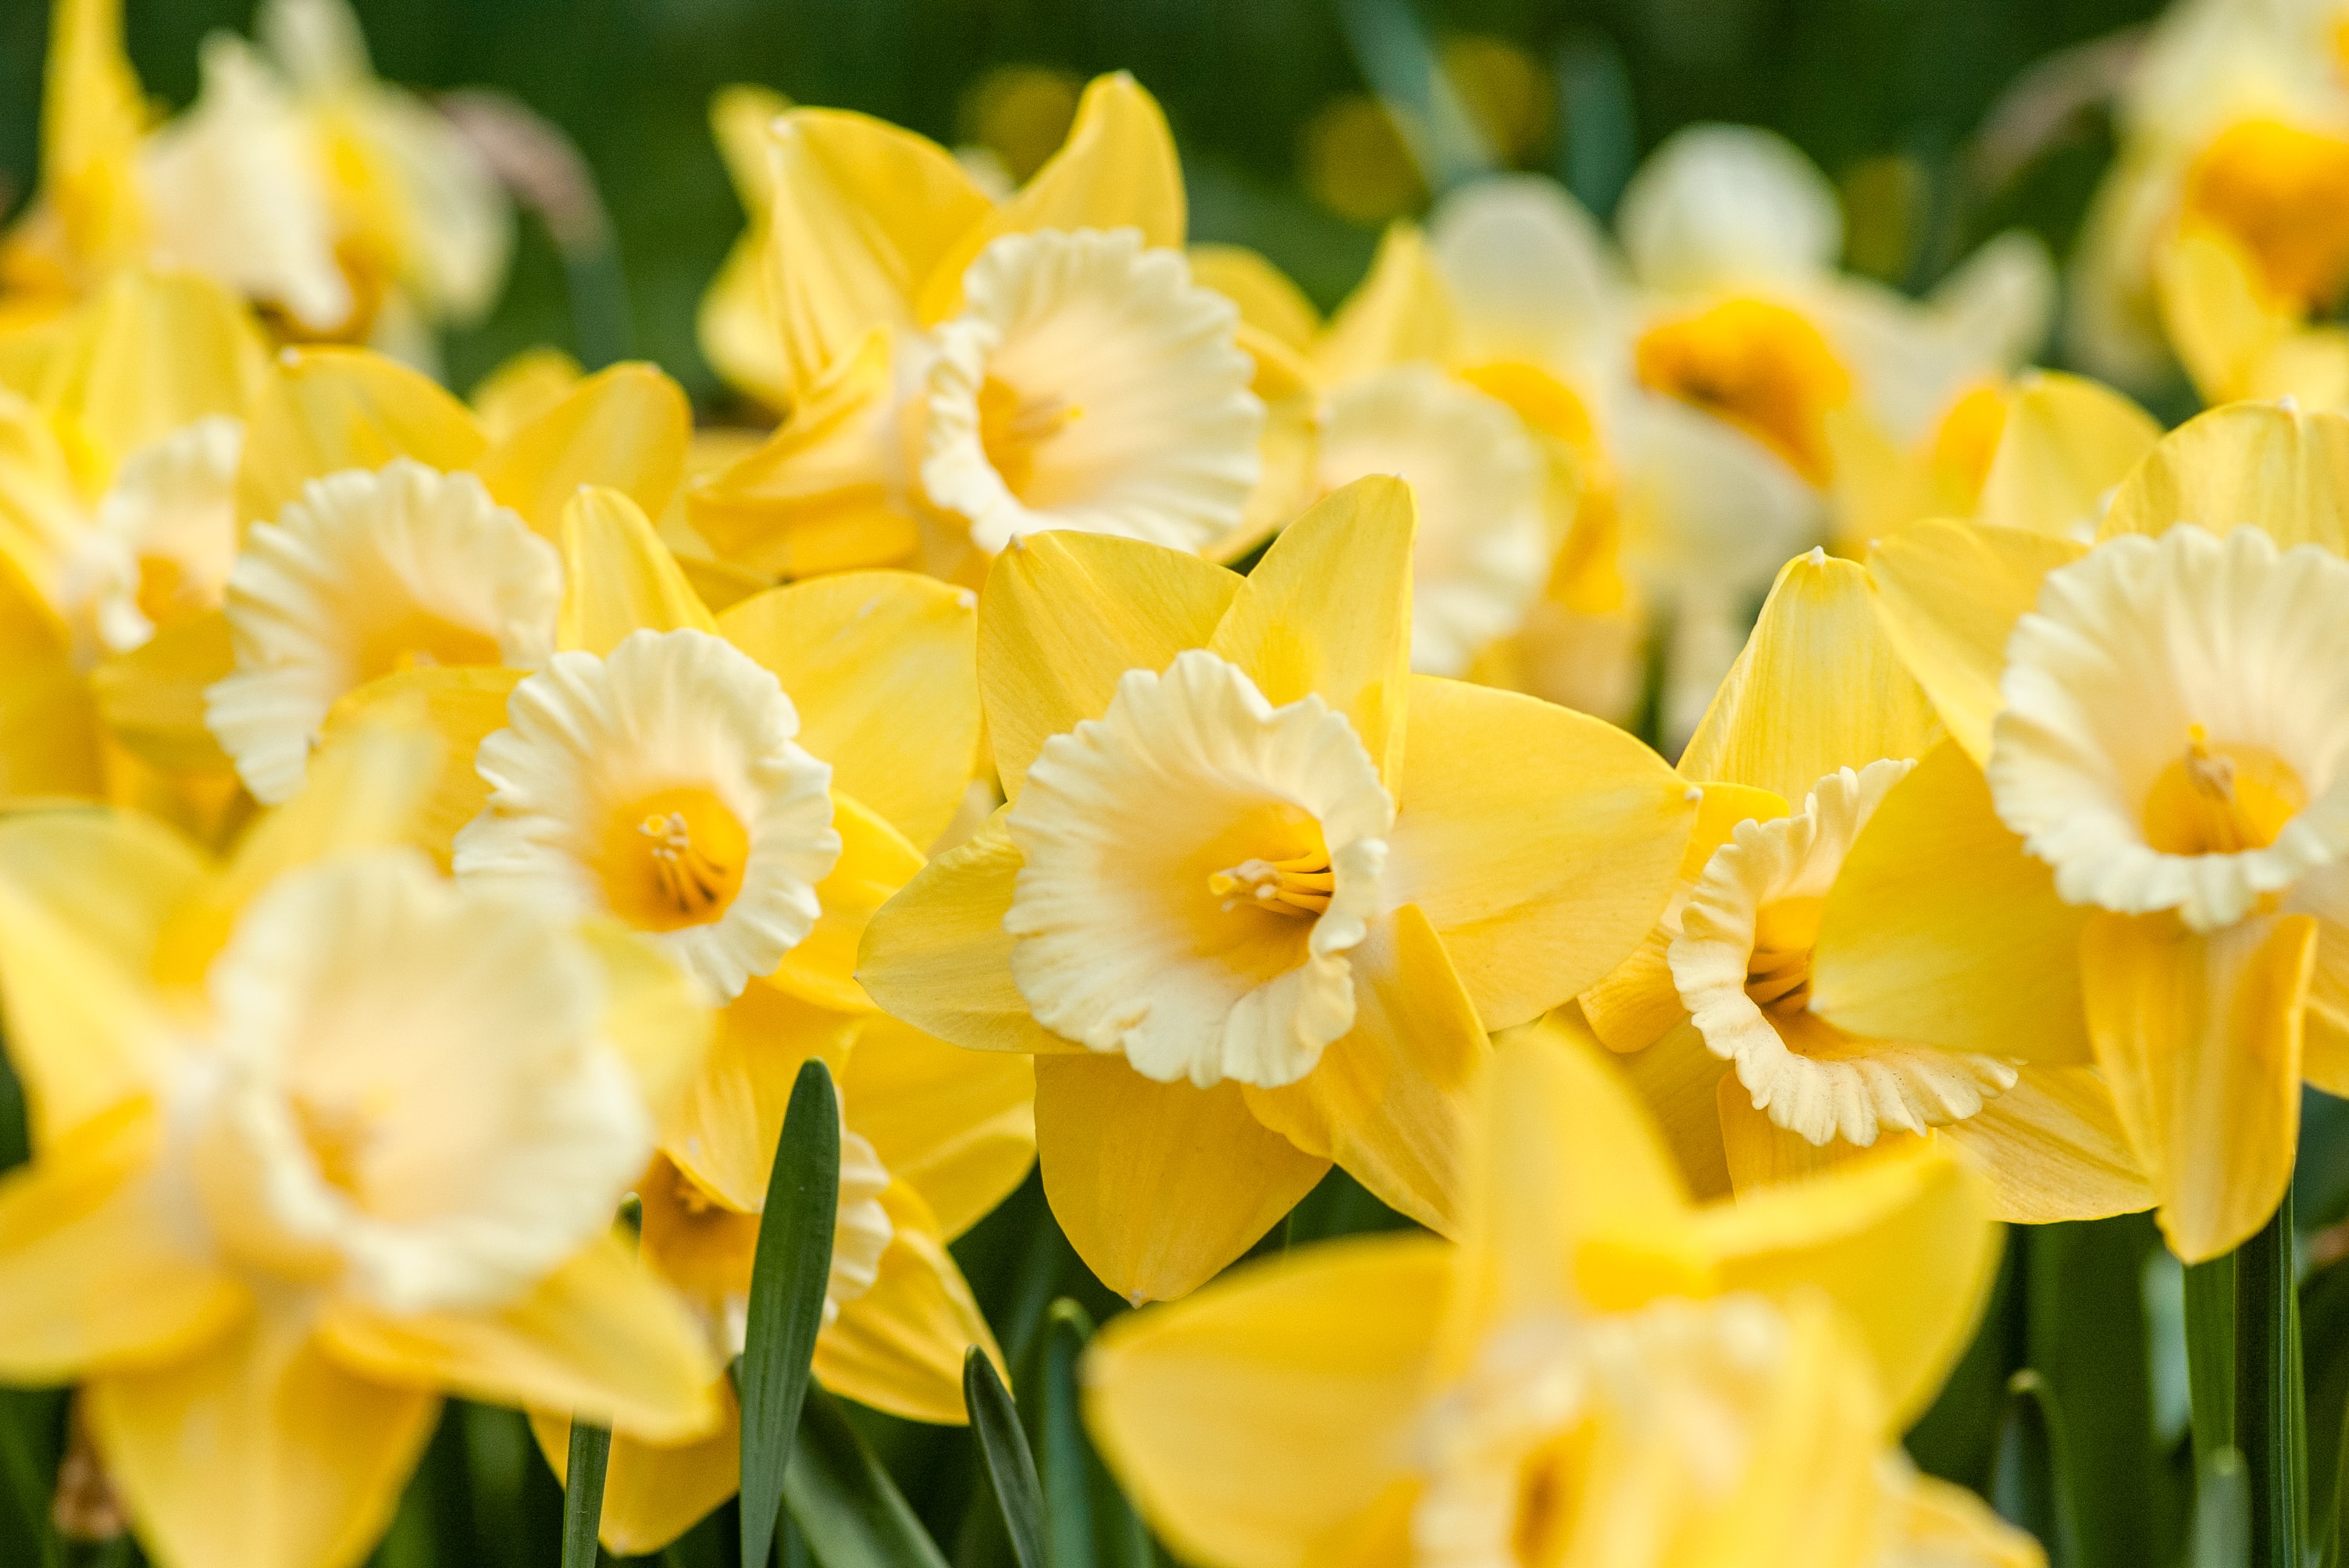 Bunga daffodil adalah bunga yang tumbuh saat musim dingin di Jepang